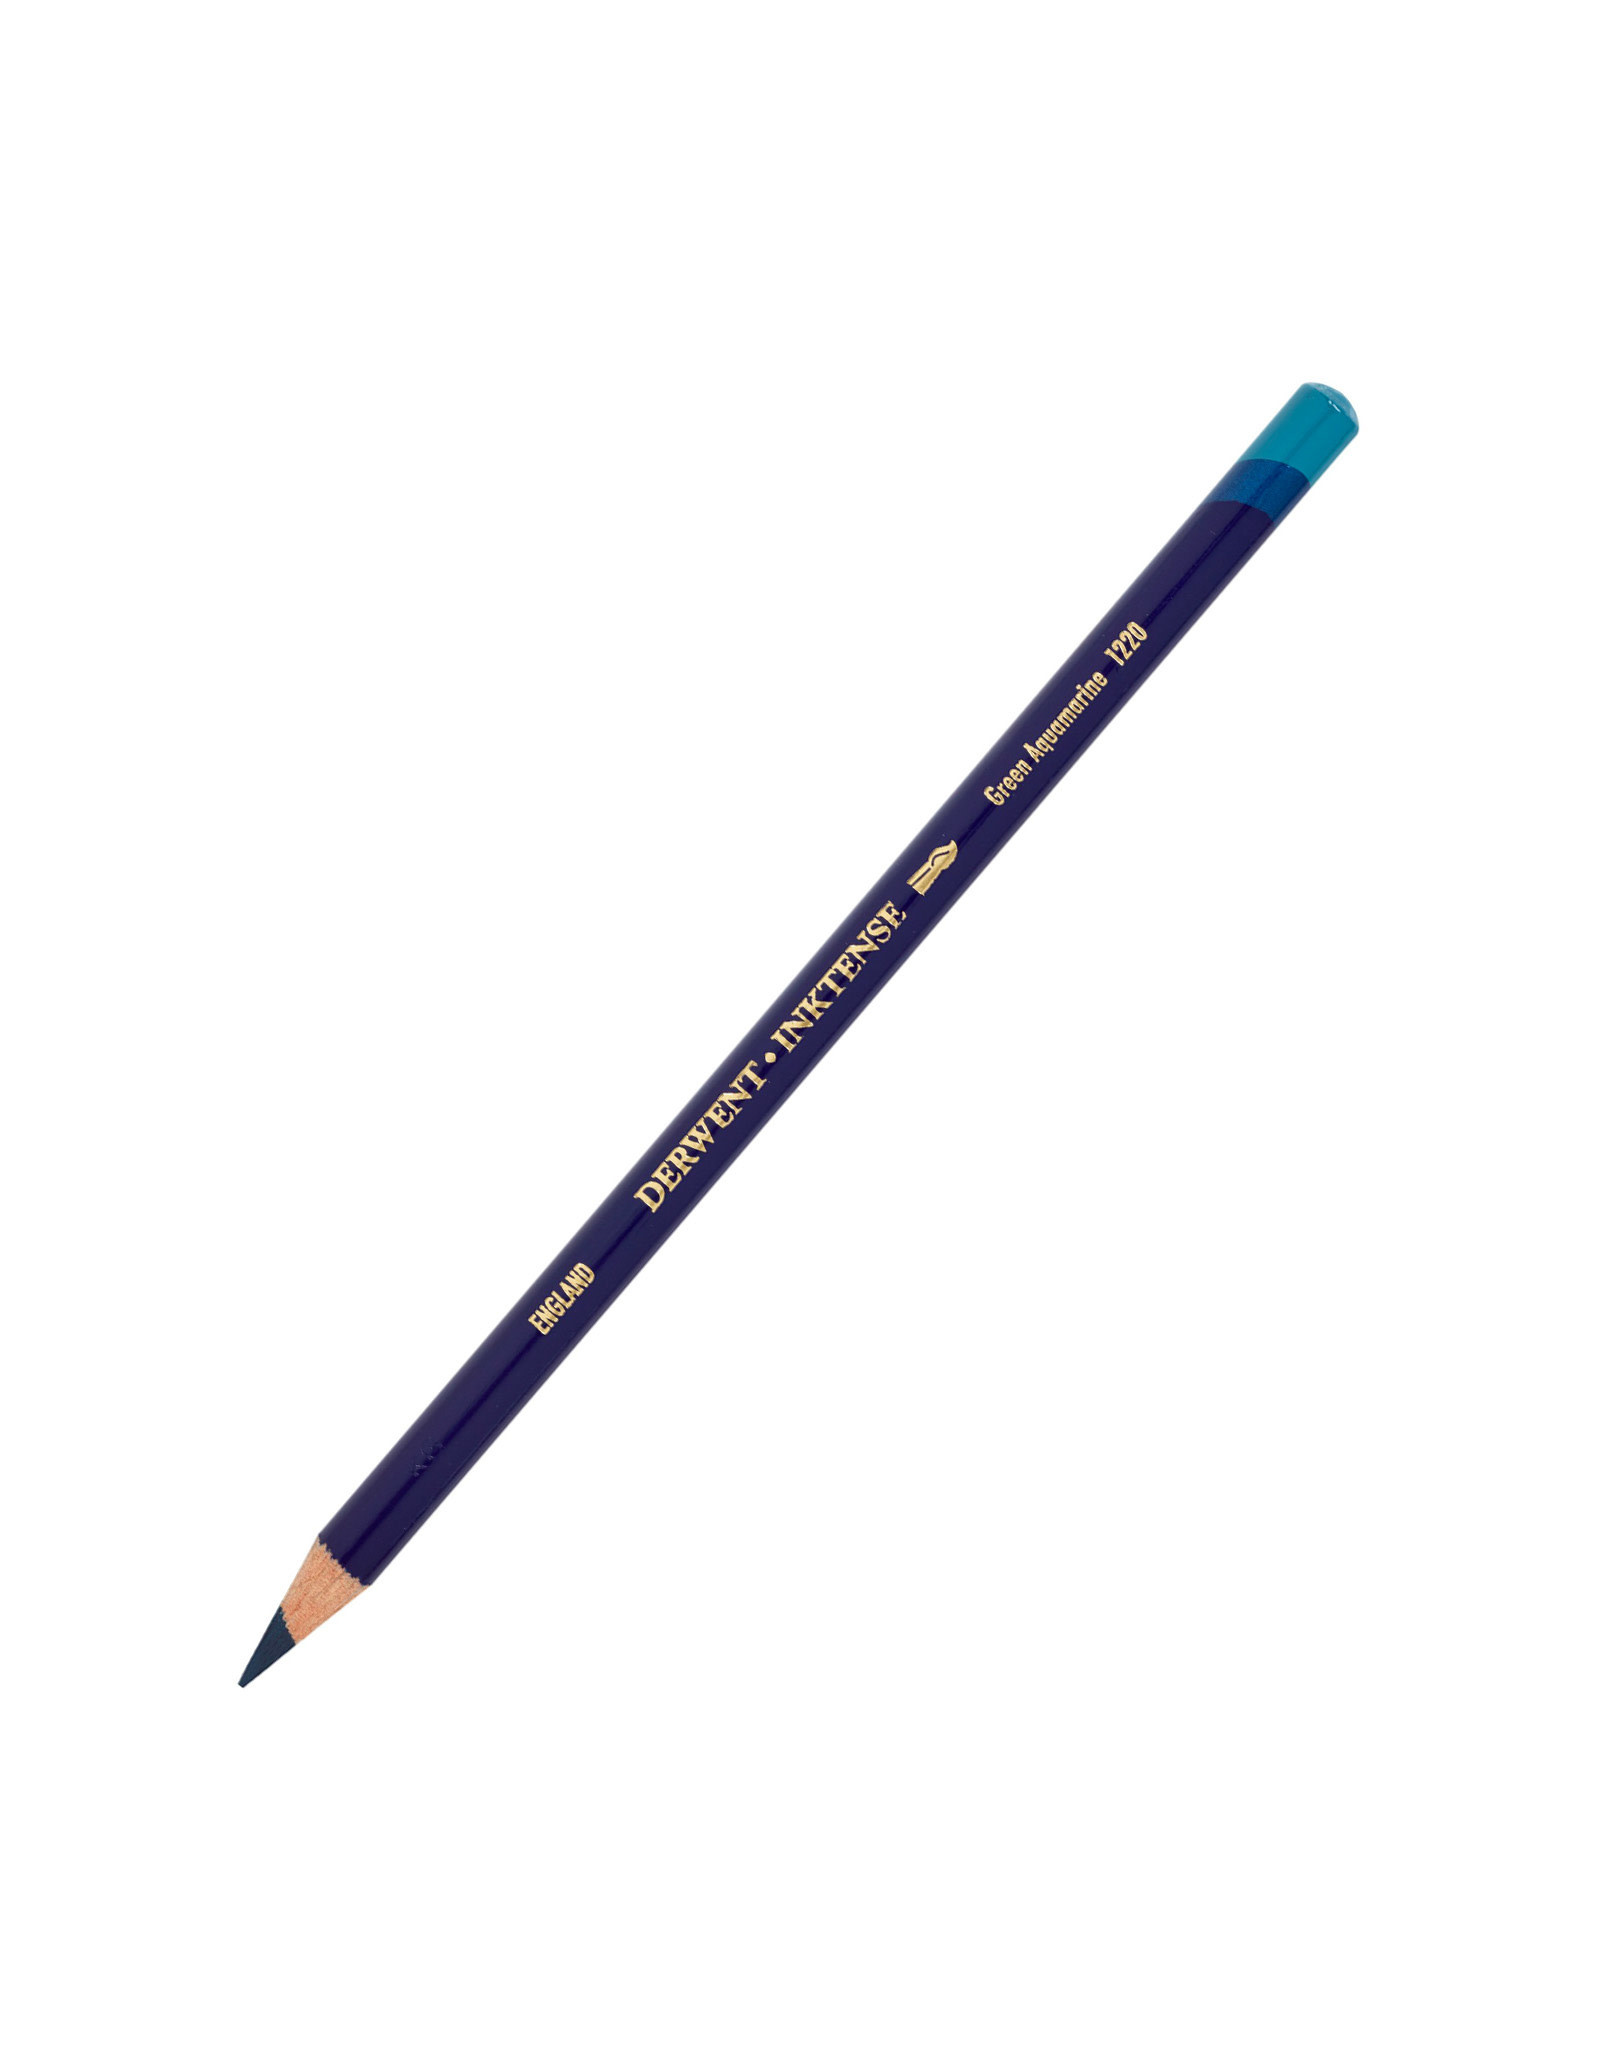 Derwent Derwent Inktense Pencil, Green Aquamarine